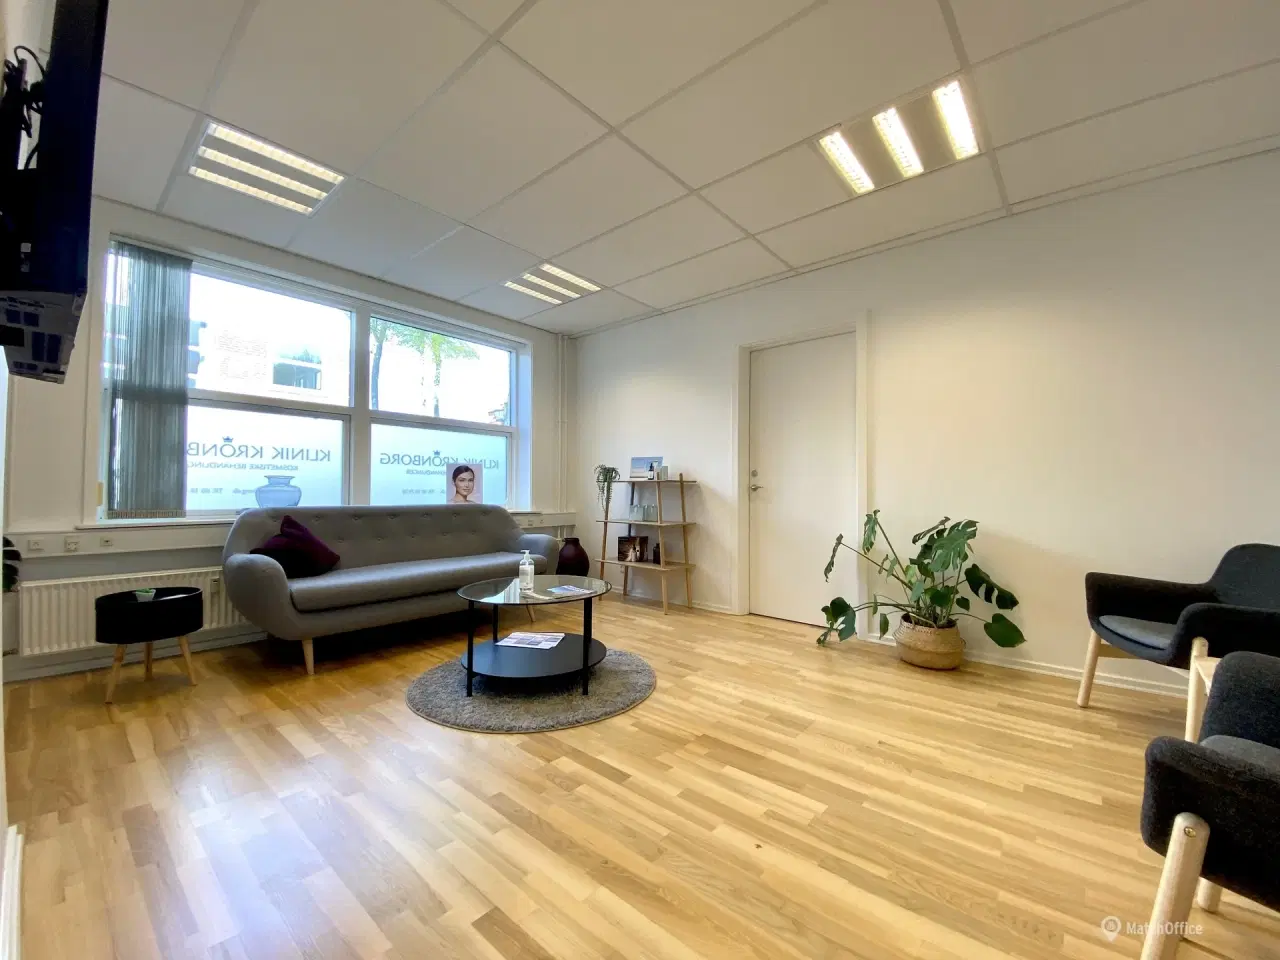 Billede 3 - 112 m² kontor/klinik lokale i velplaceret ejendom i Middelfart